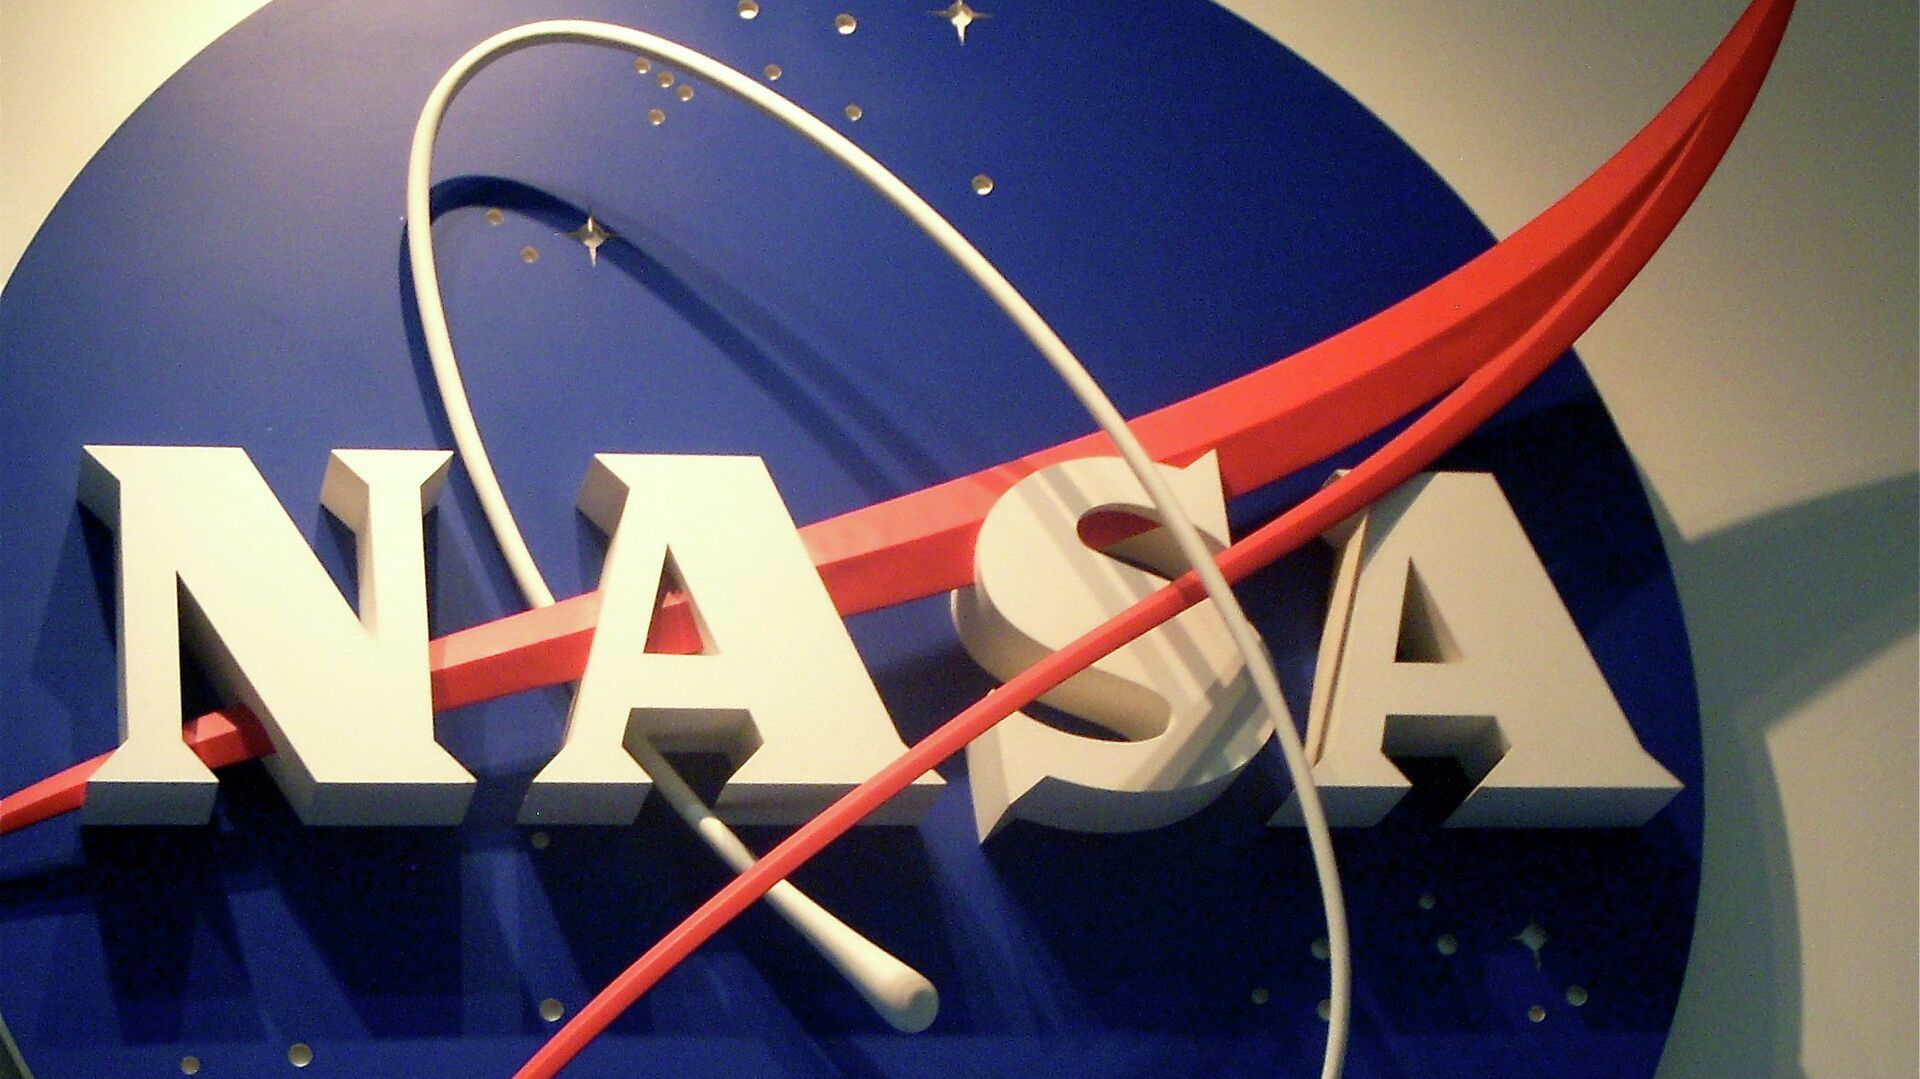 НАСА высказала свою позицию относительно лунного модуля Peregrine